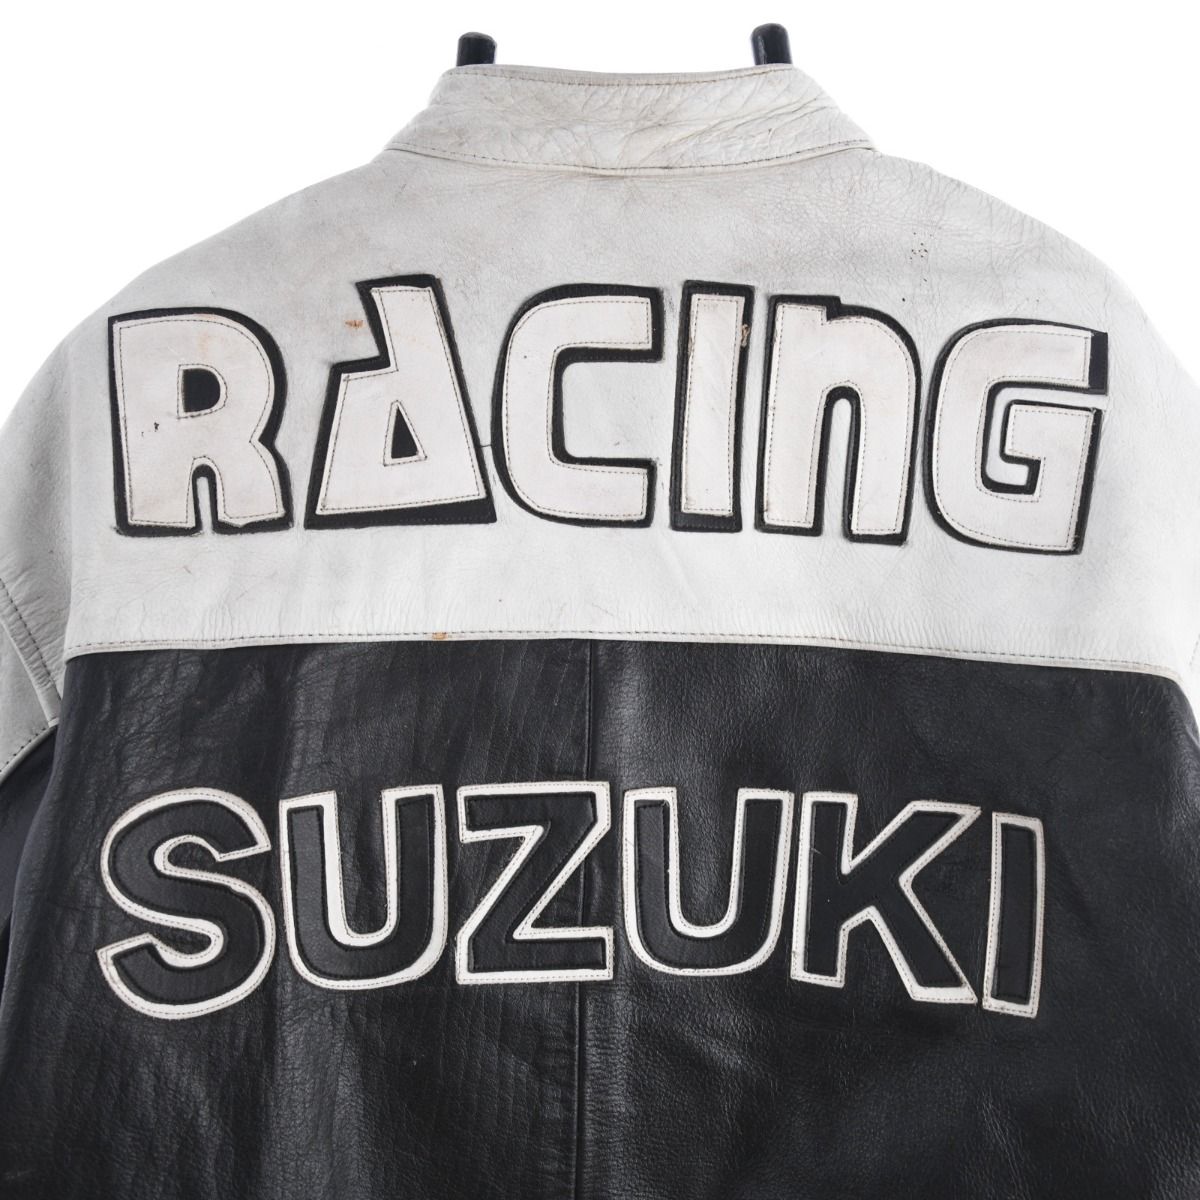 Suzuki 1990s Leather Motorcycle Jacket